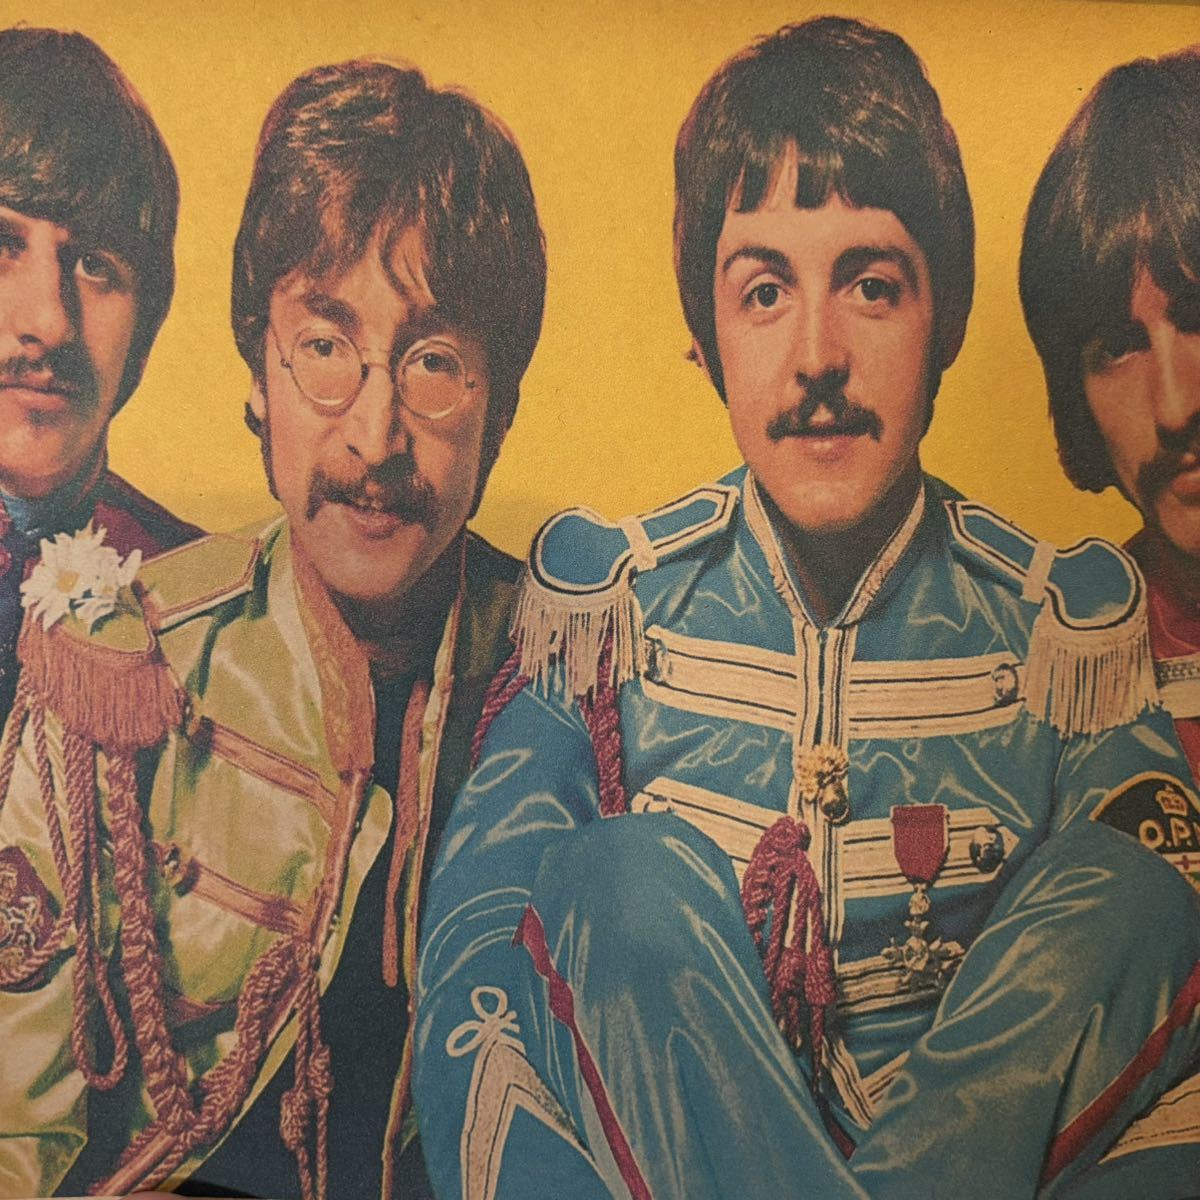 【白額付きポスター】ビートルズ The Beatles サージェントペパー⑩